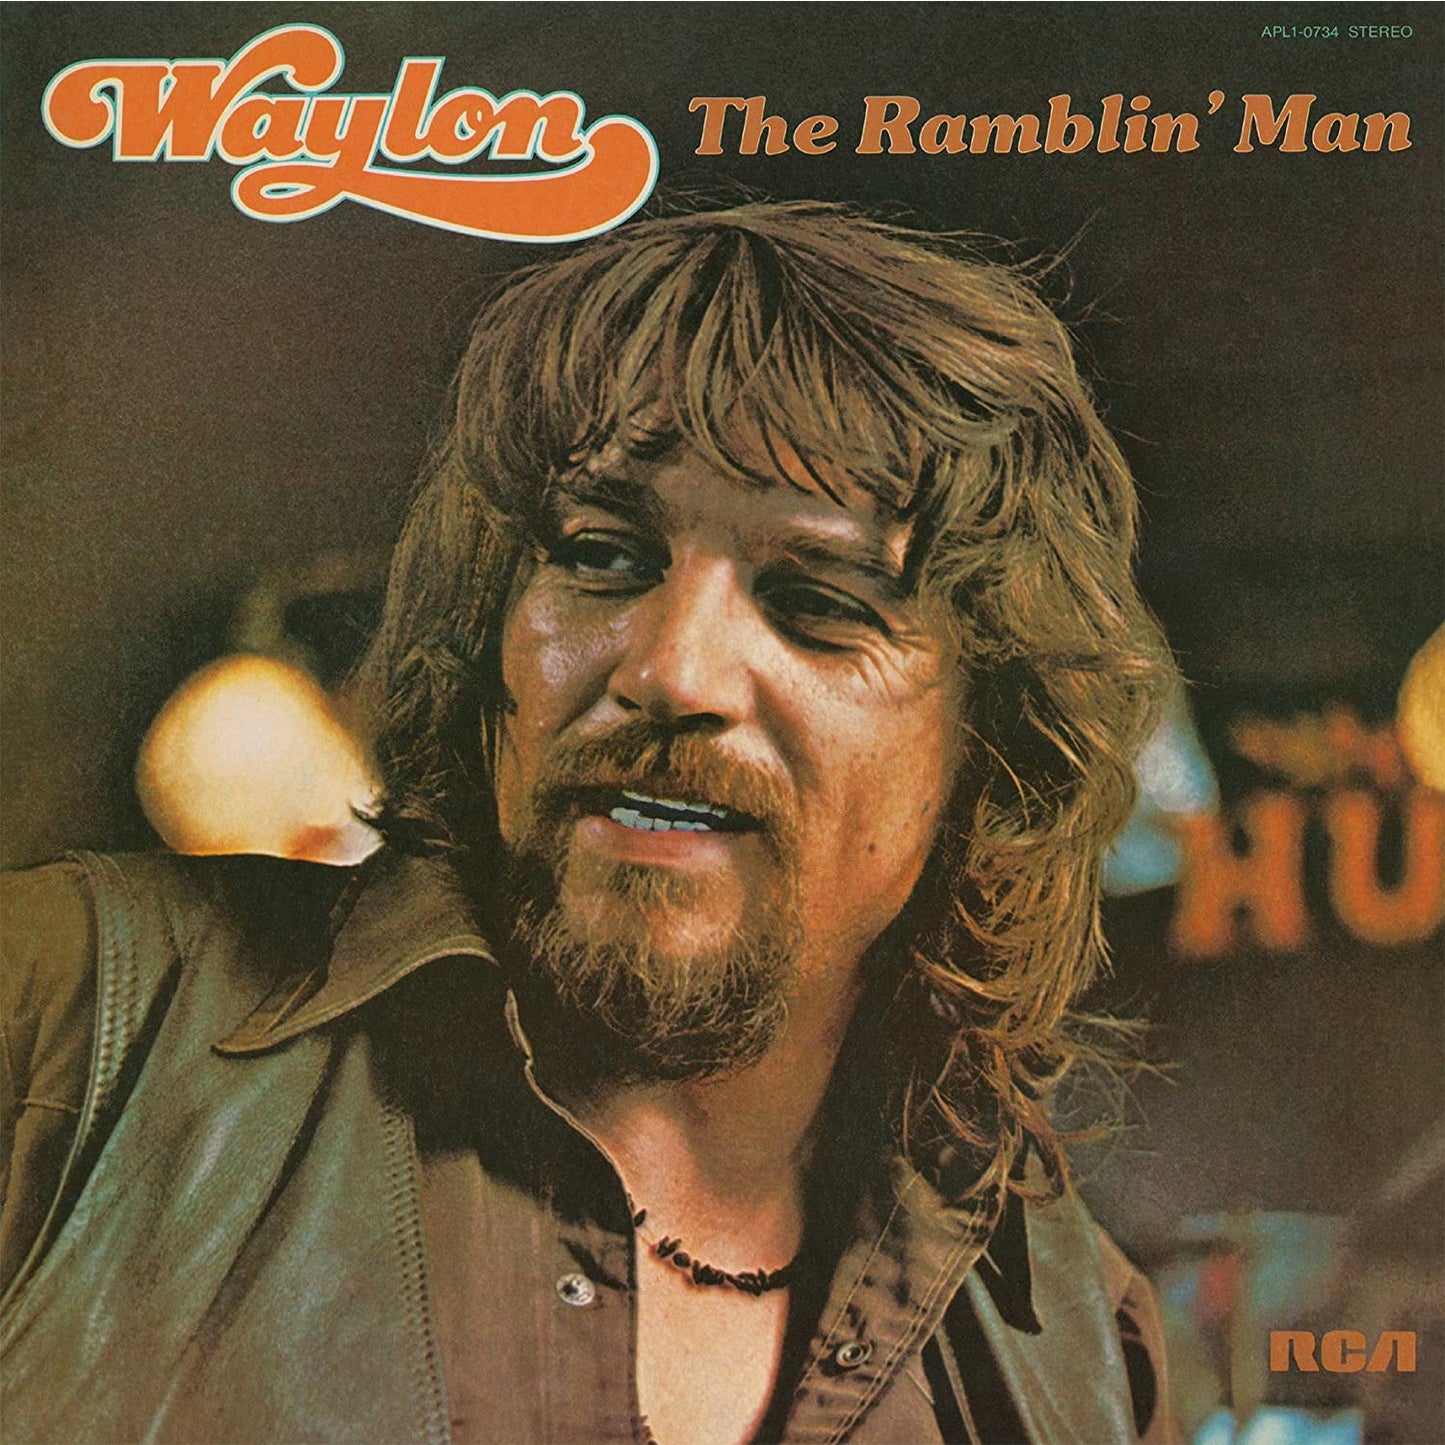 Waylon Jennings - The Ramblin' Man - Music on Vinyl LP